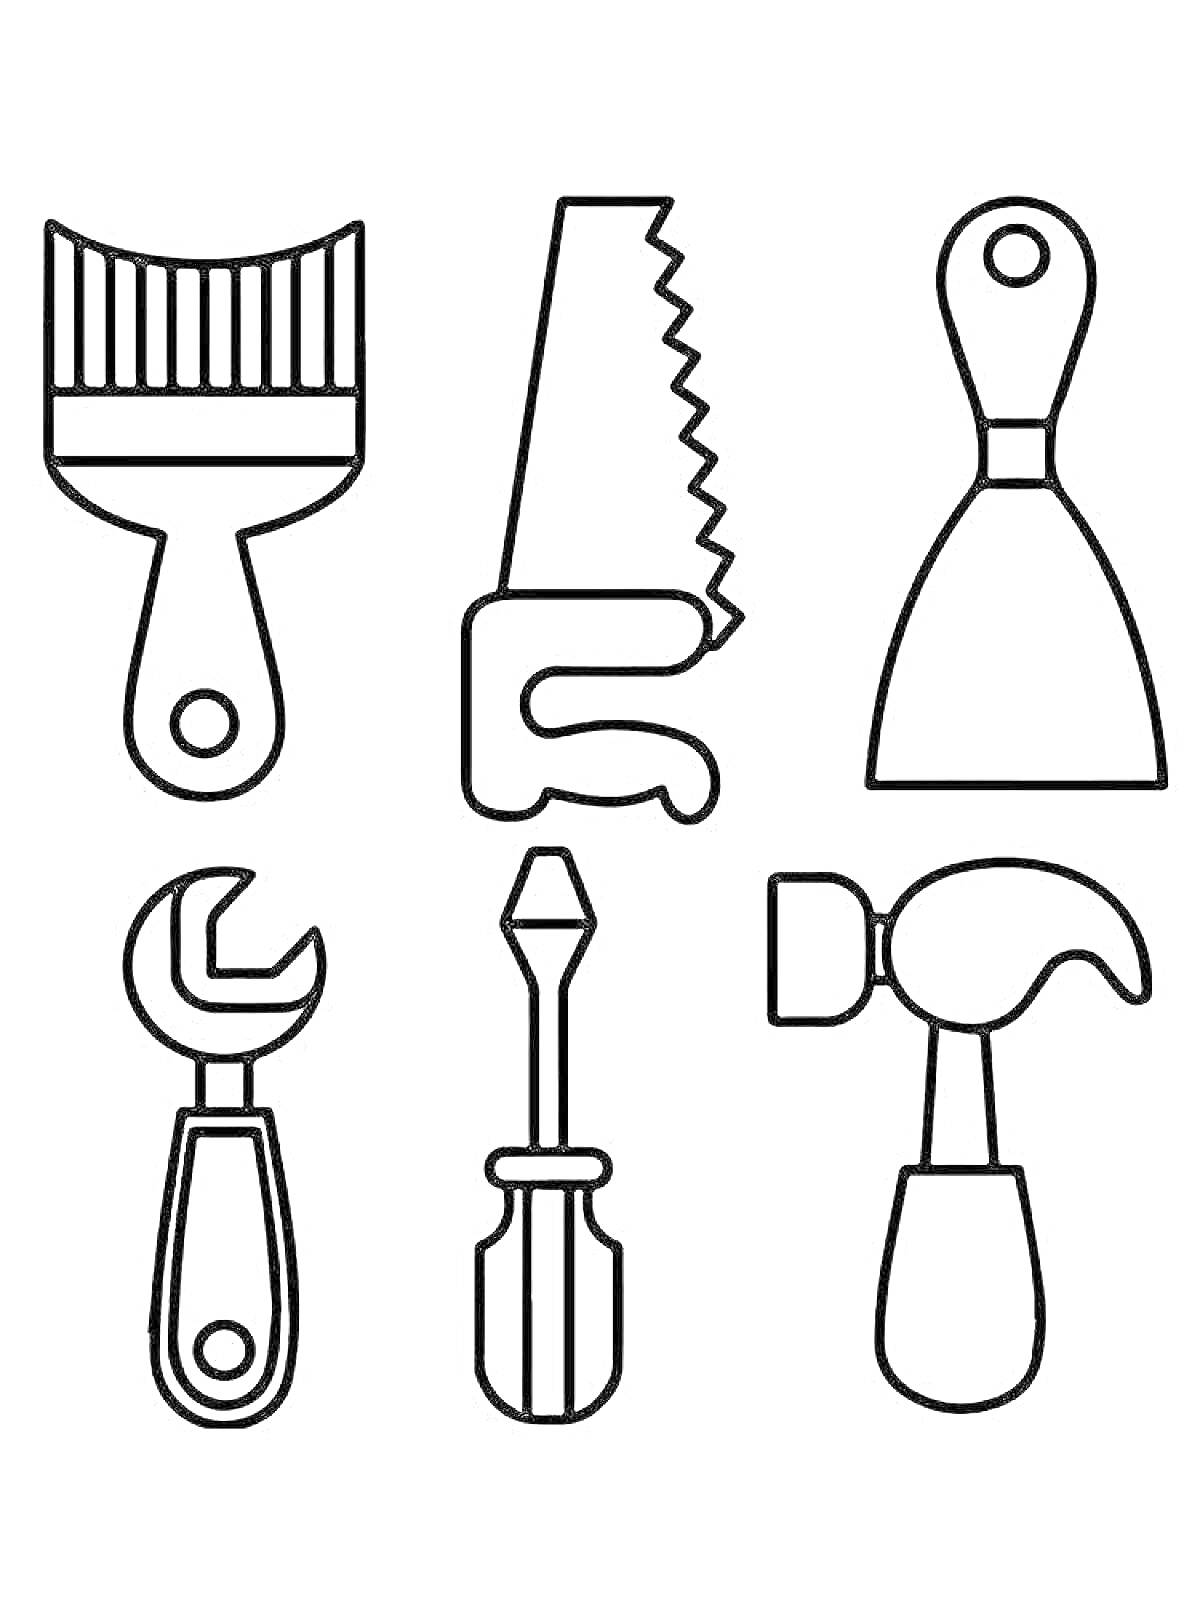 На раскраске изображено: Строительство, Пила, Гаечный ключ, Отвертка, Молоток, Ремонт, Инструмент, Кисти, Контурные рисунки